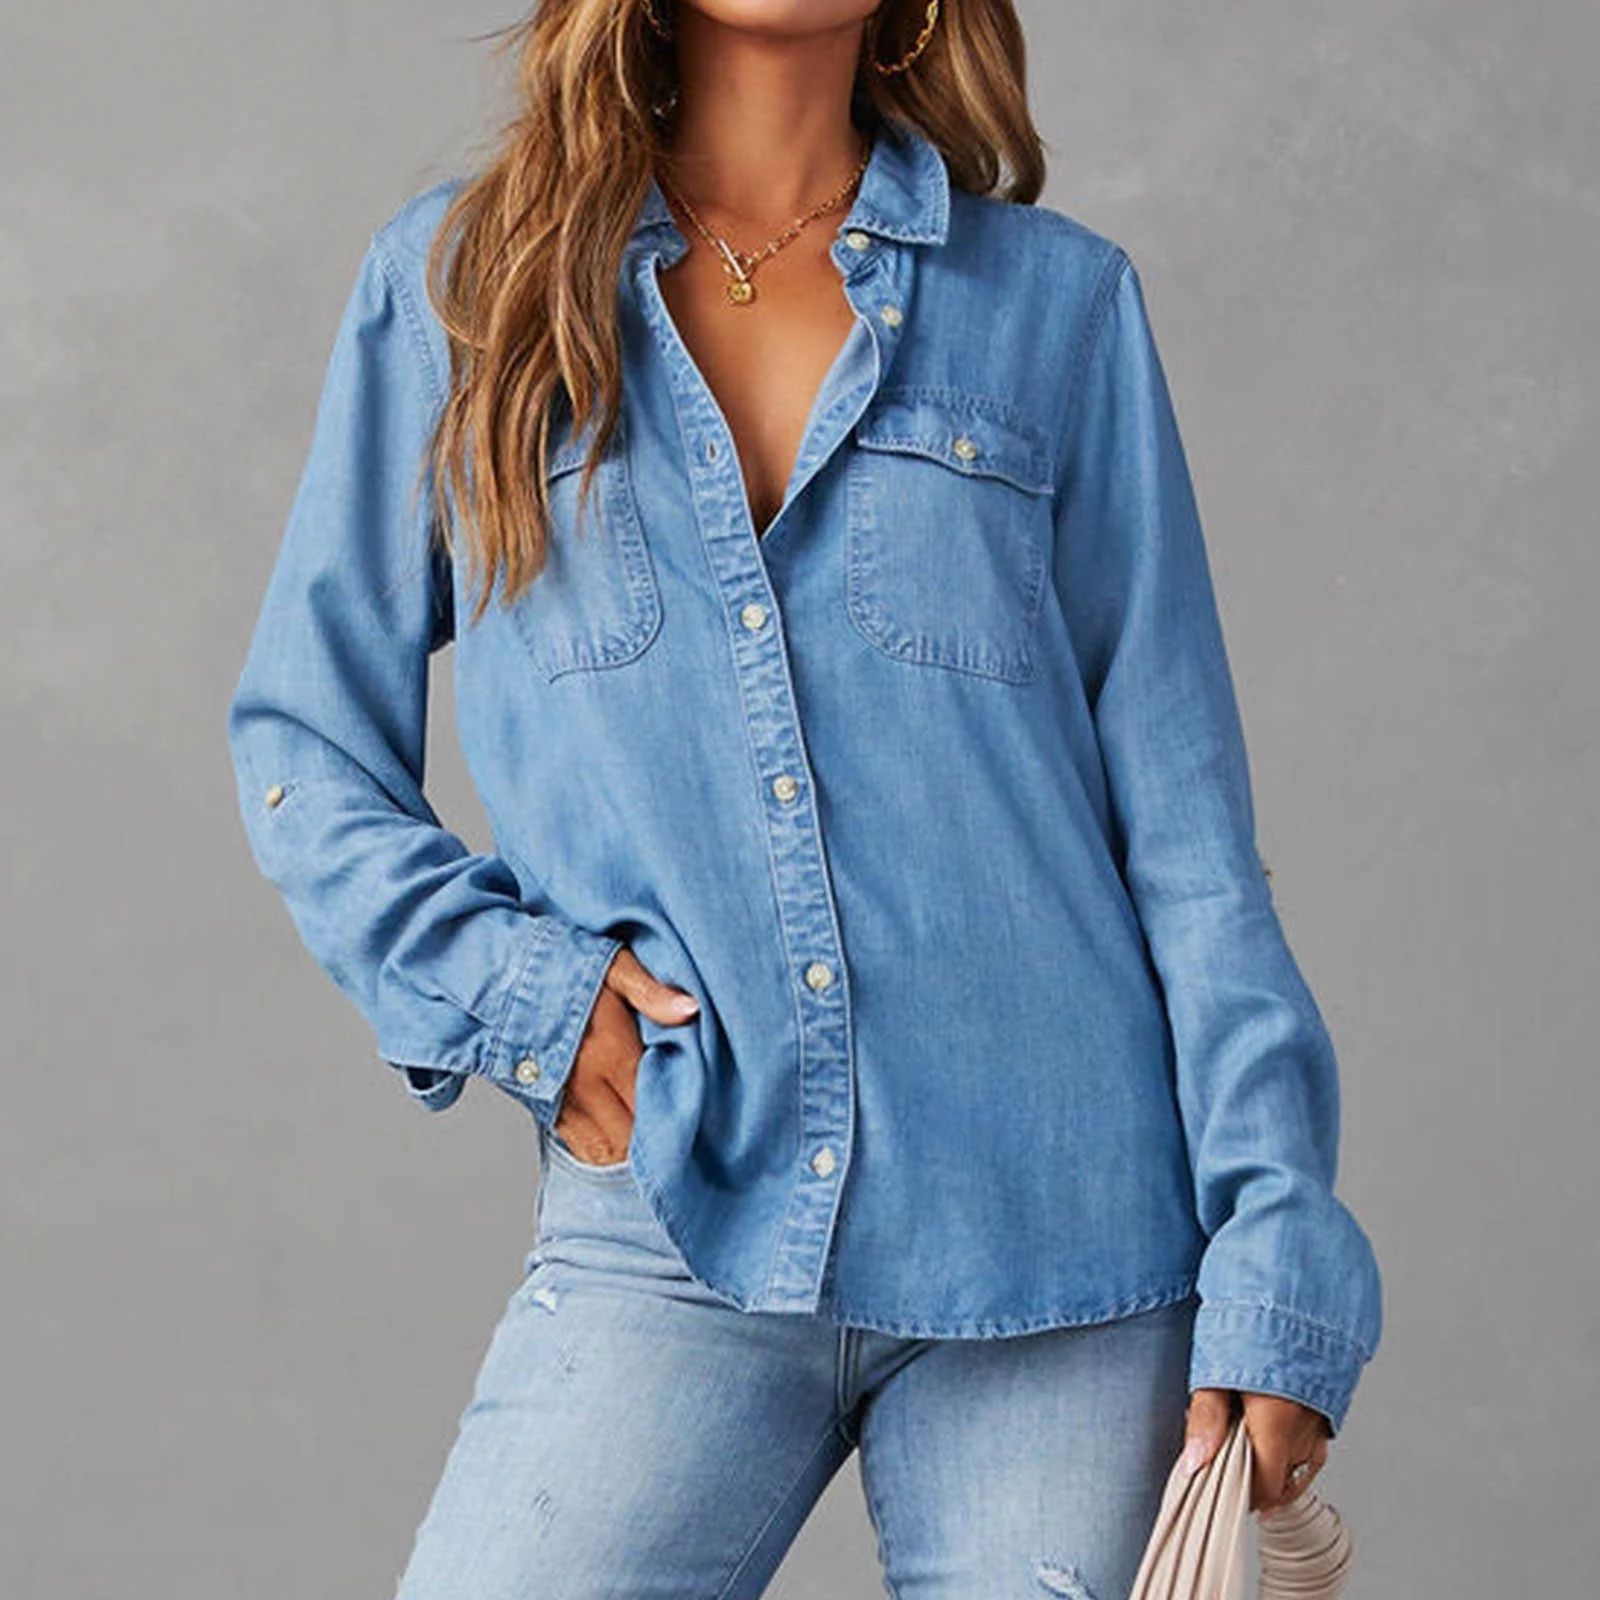 Augper Women's Denim Shirt Women Chambray Jean Western Shirts Long Sleeve Button Tops | Walmart (US)